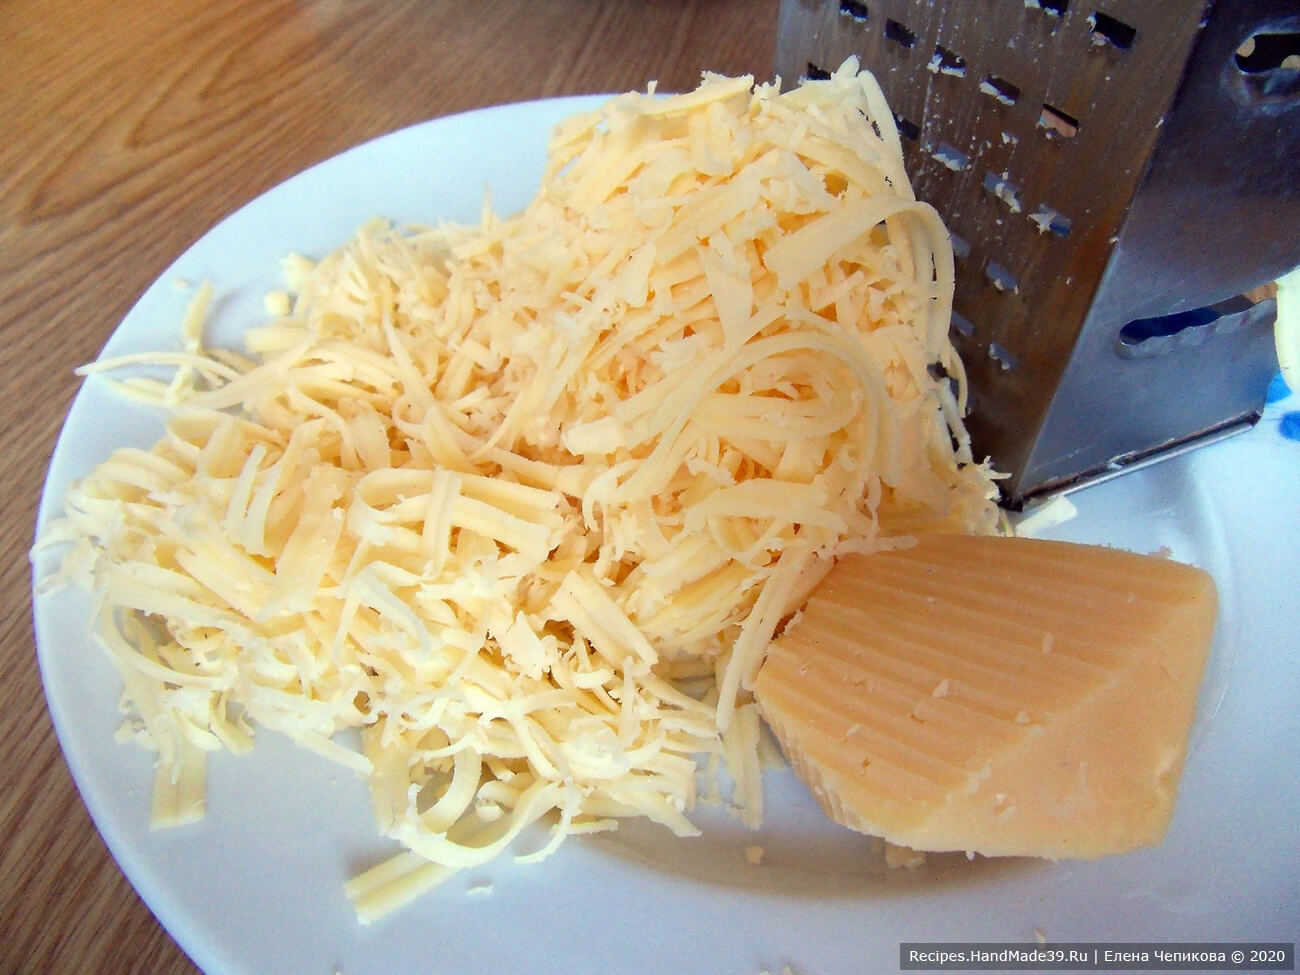 Сыр натереть на тёрке